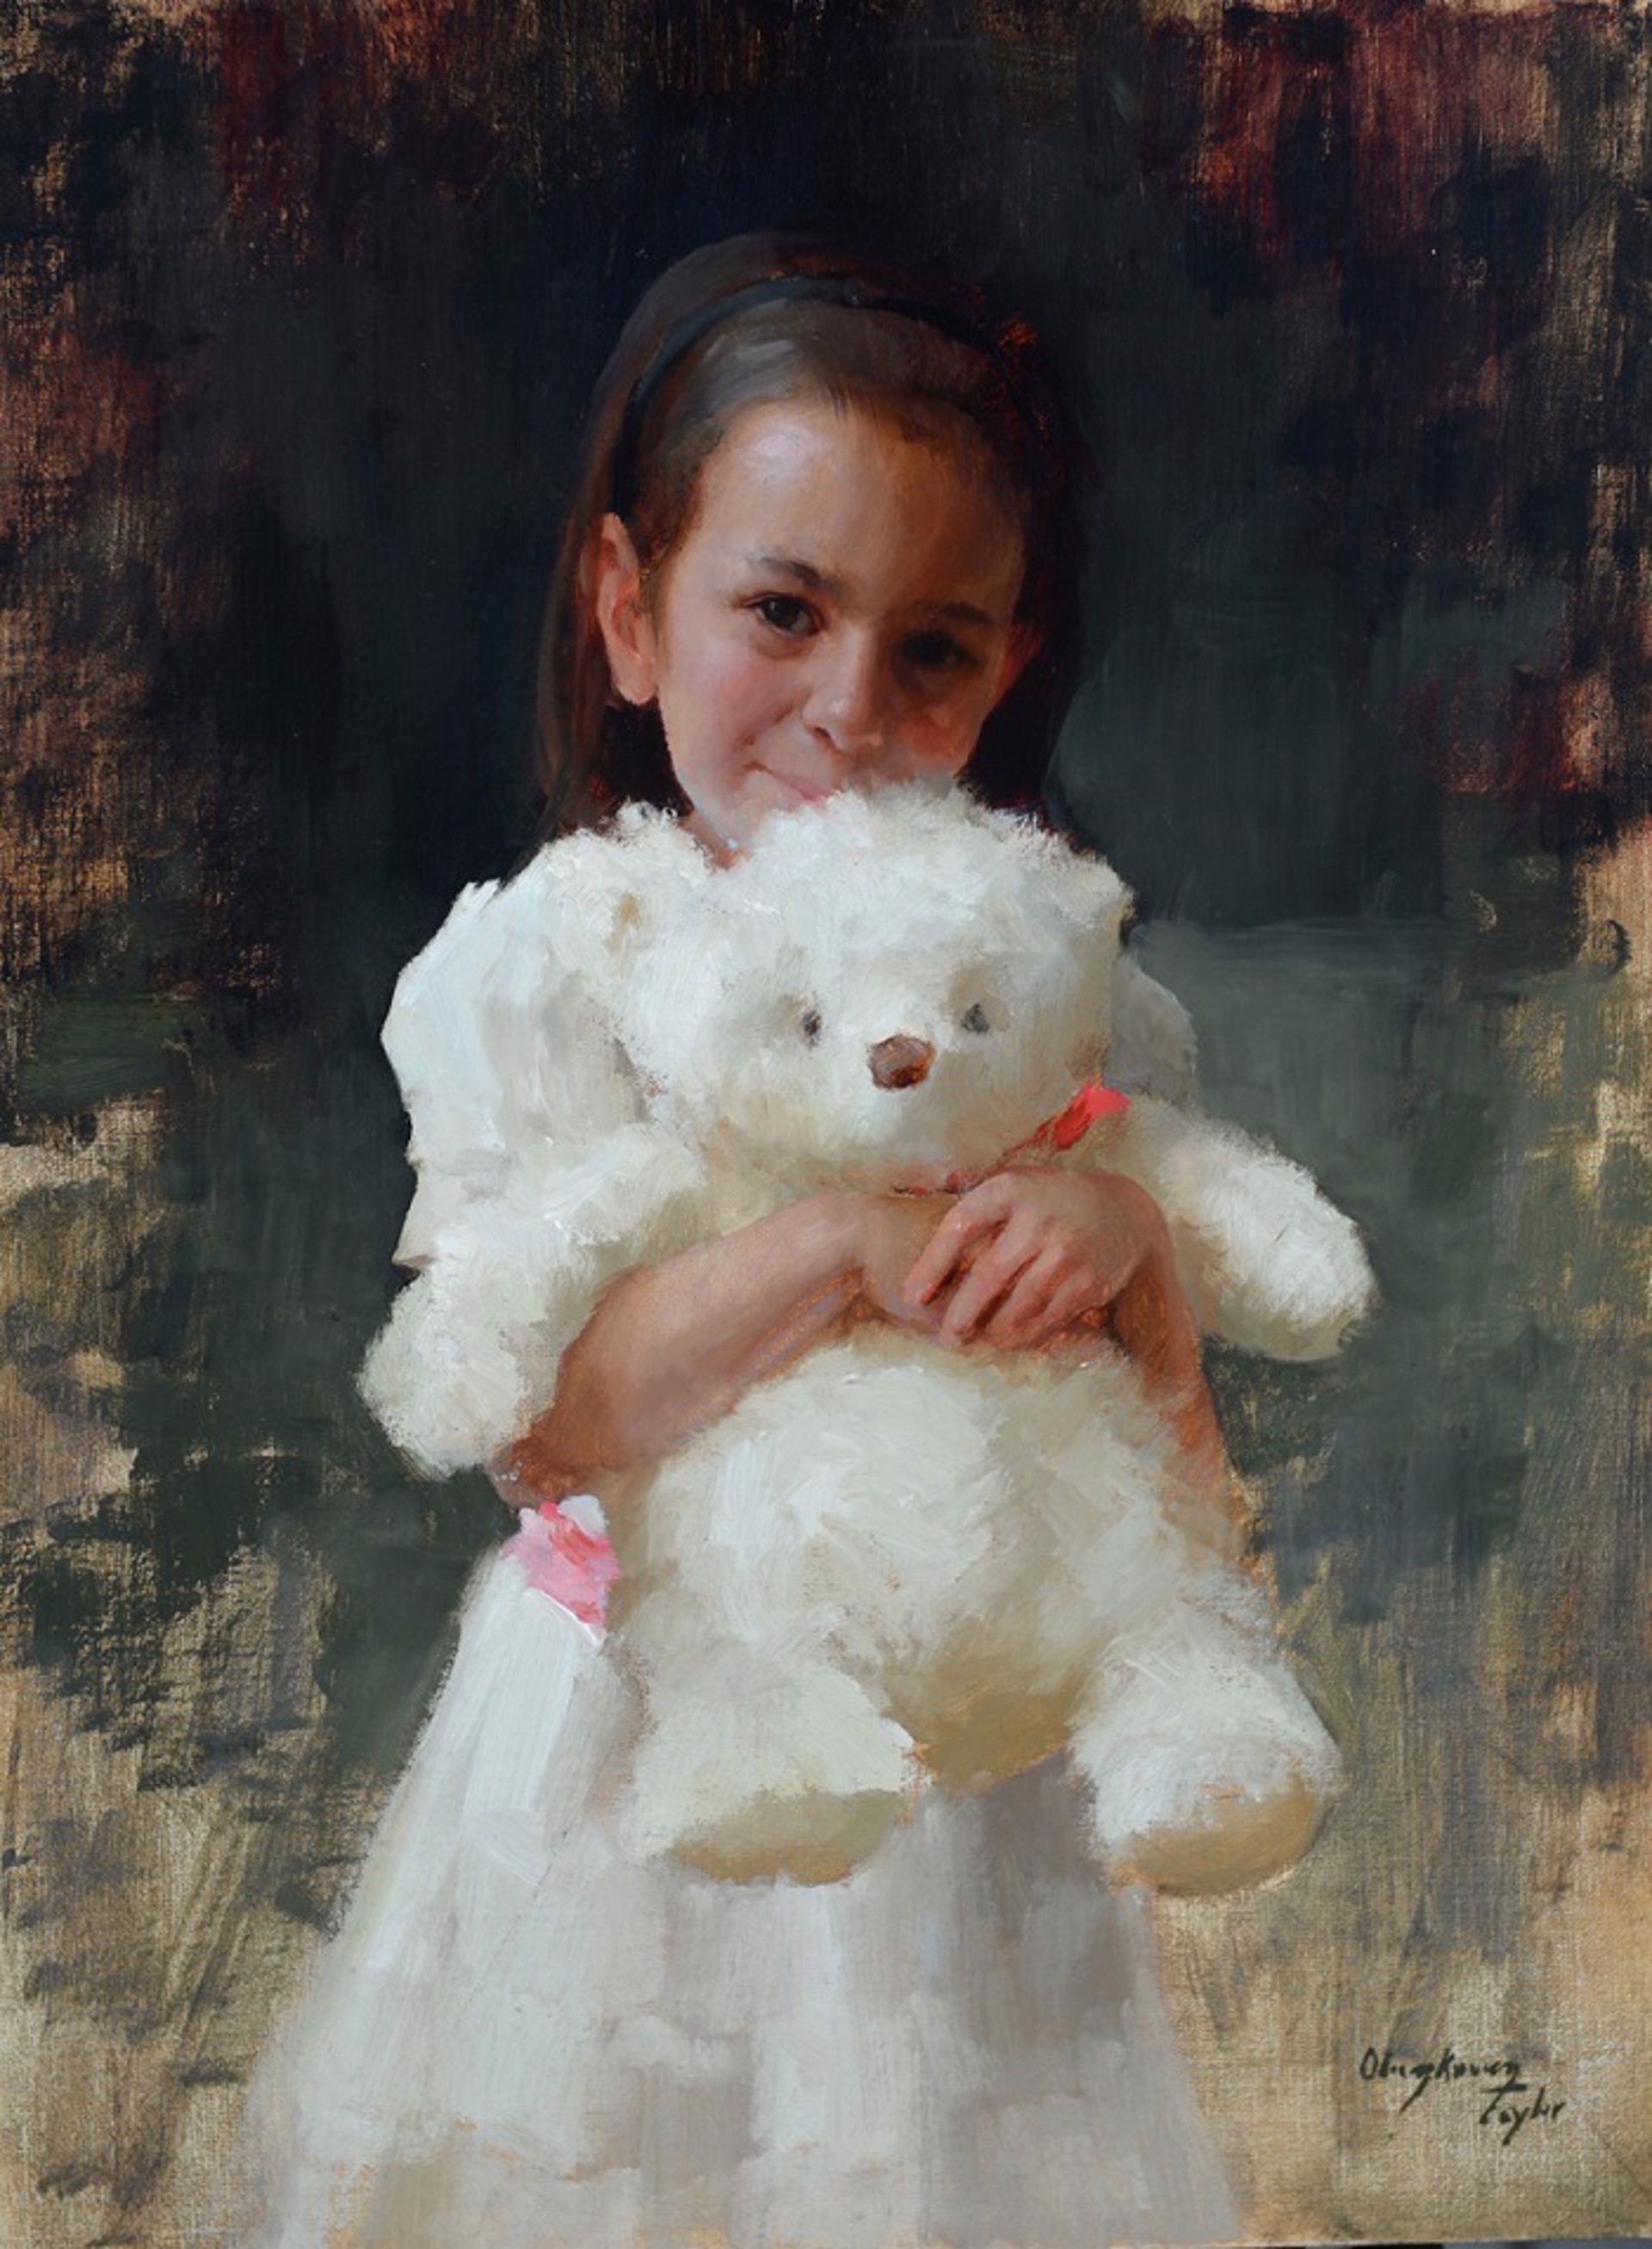 Bella's Teddy Bear by Marci Oleszkiewicz